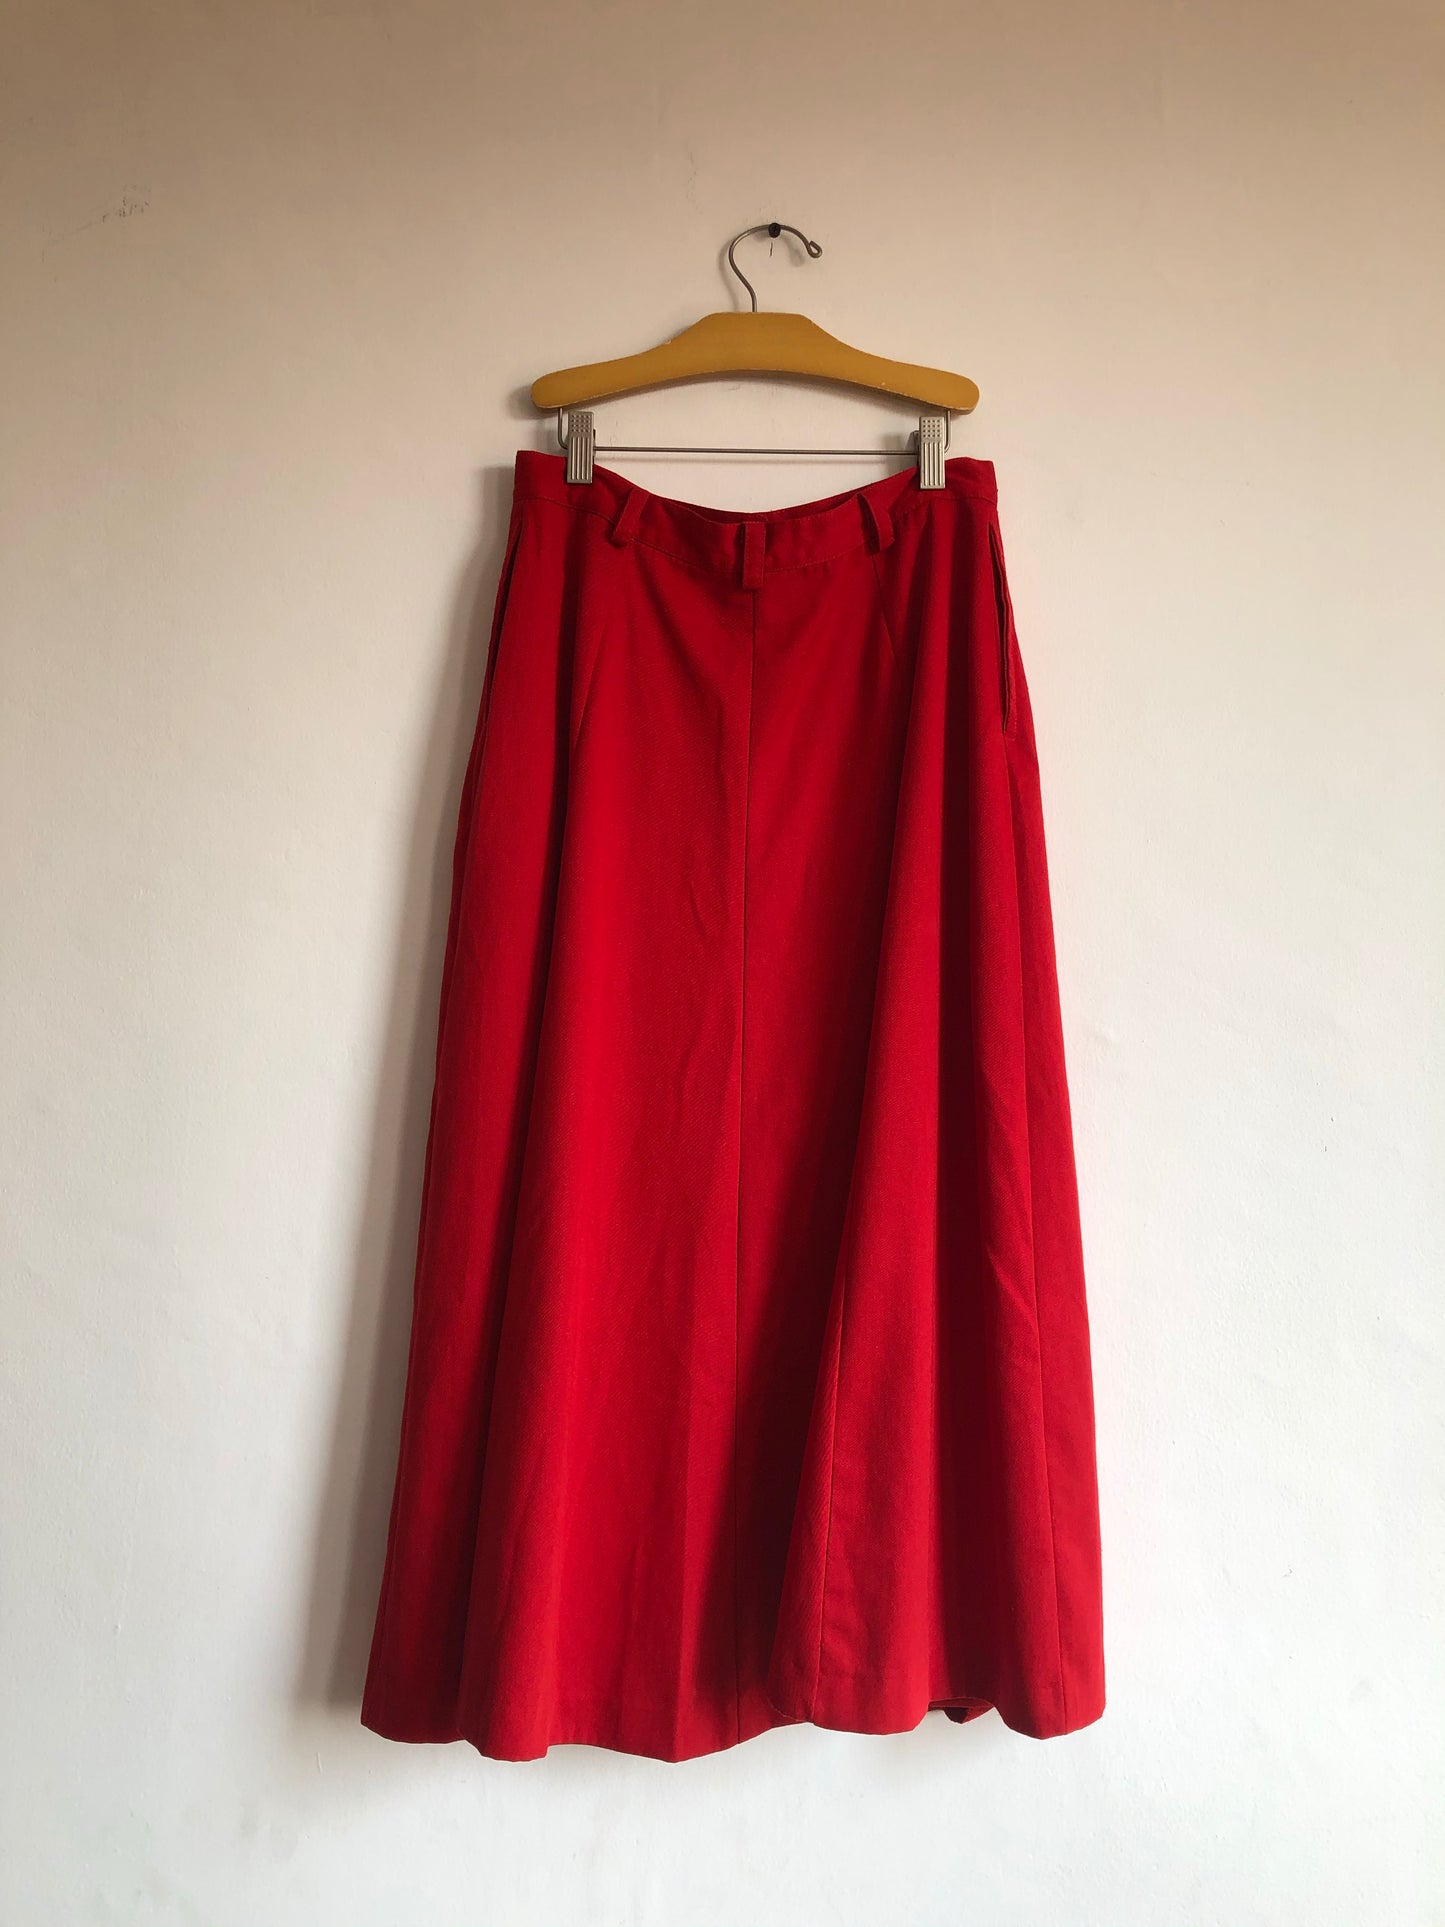 Long Red Skirt